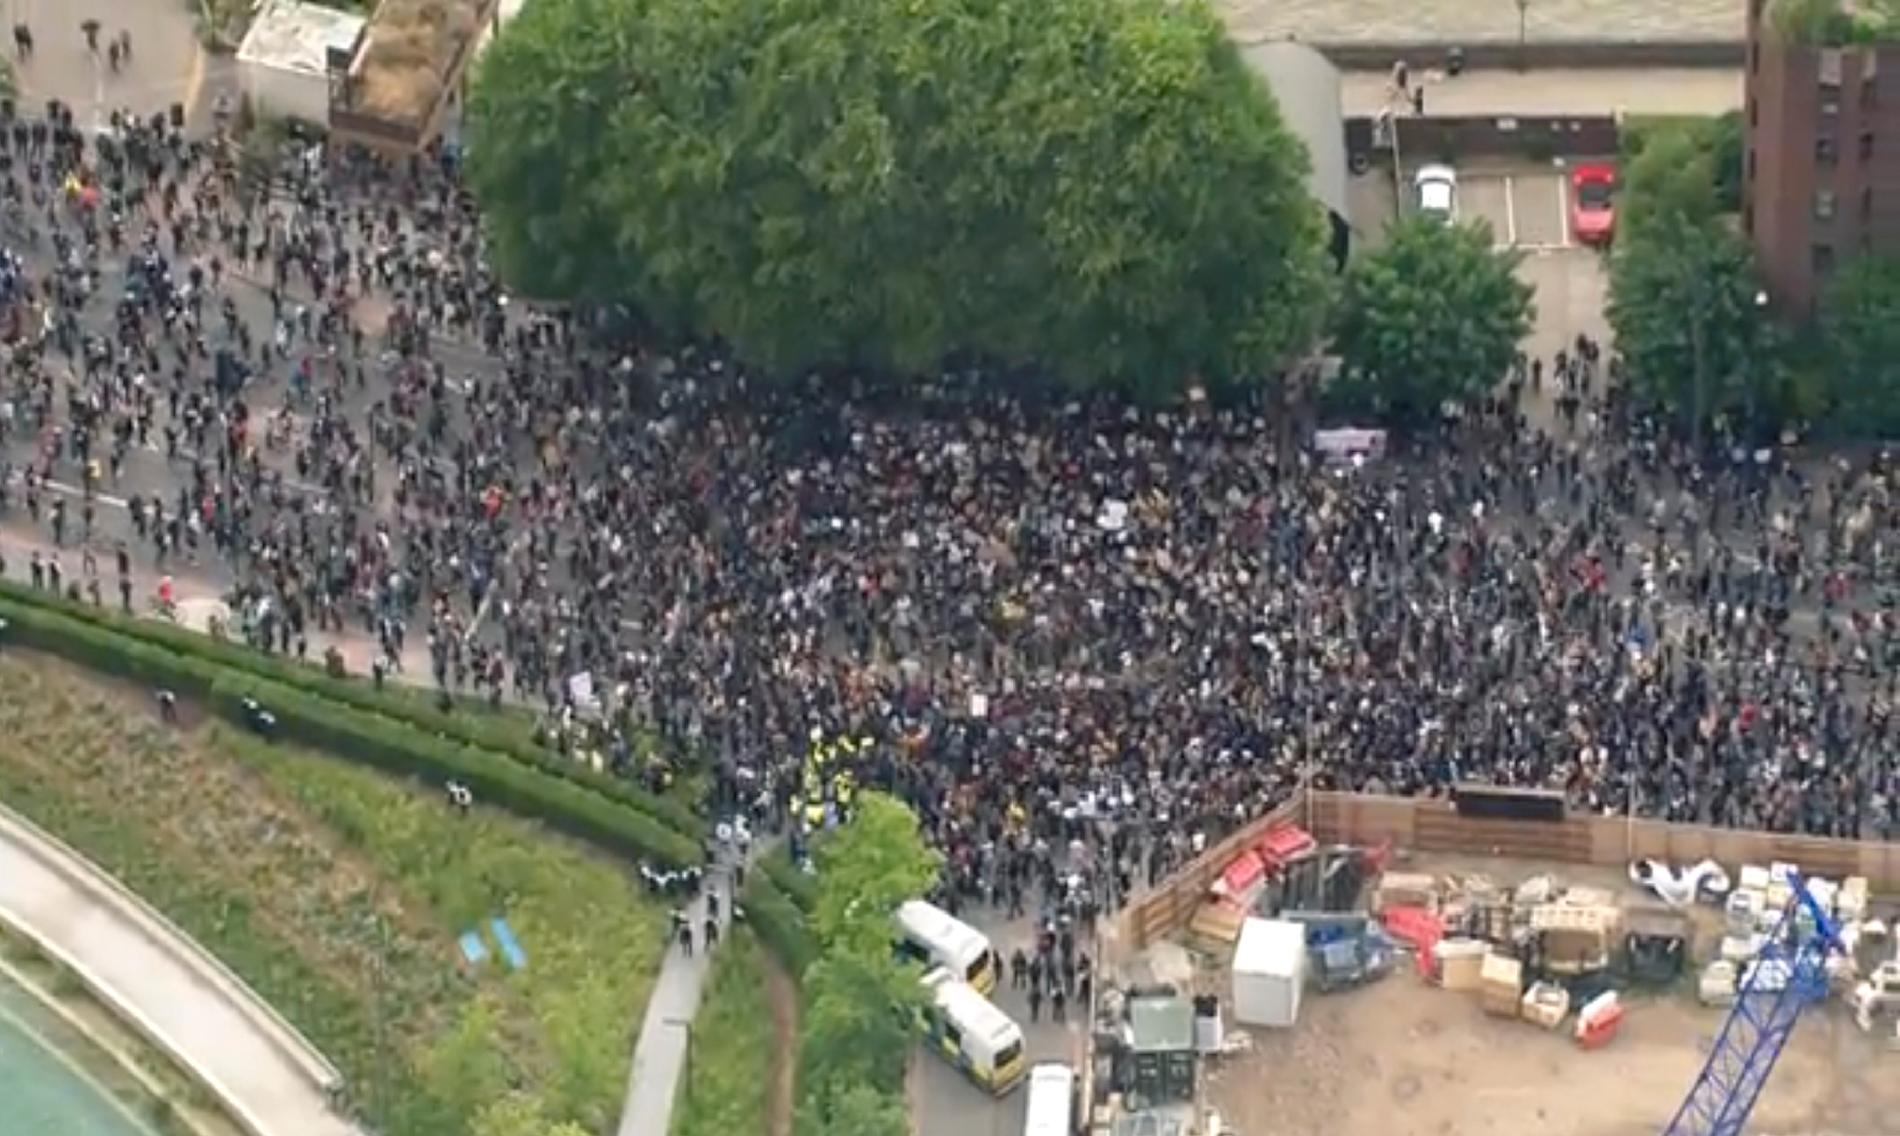 Tusentals demonstranter samlades för att protestera utanför USA:s ambassad i London på söndagen.